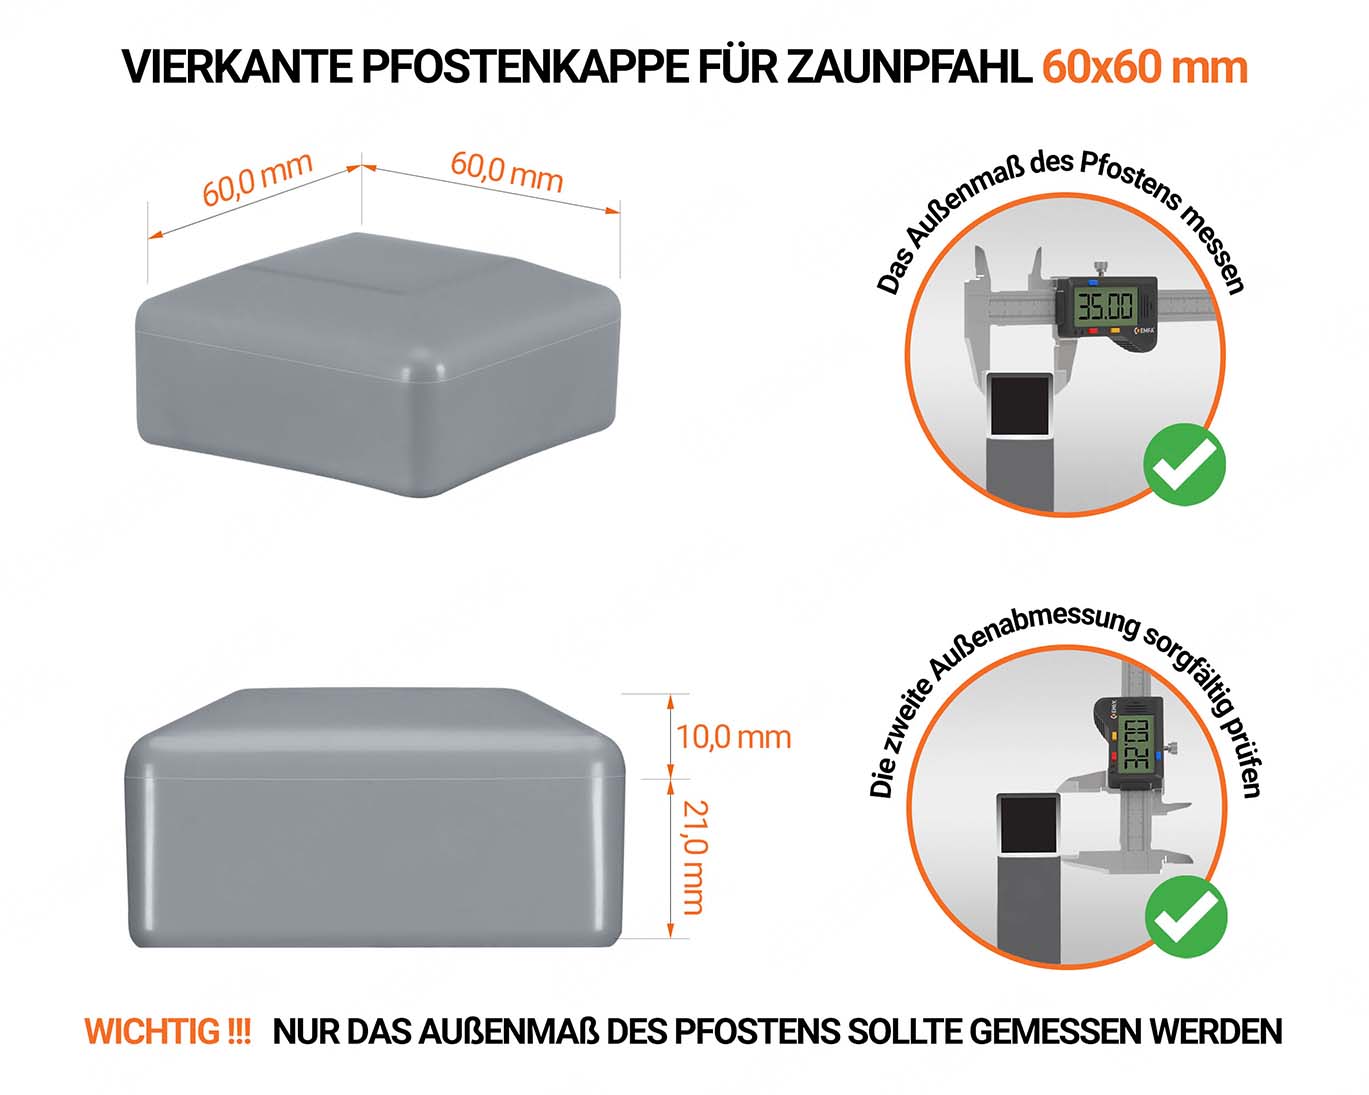 Graue Pfostenkappen vierkant für Pfostenmaße 60x60 mm  mit technischen Abmessungen und Anleitung für korrekte Messung